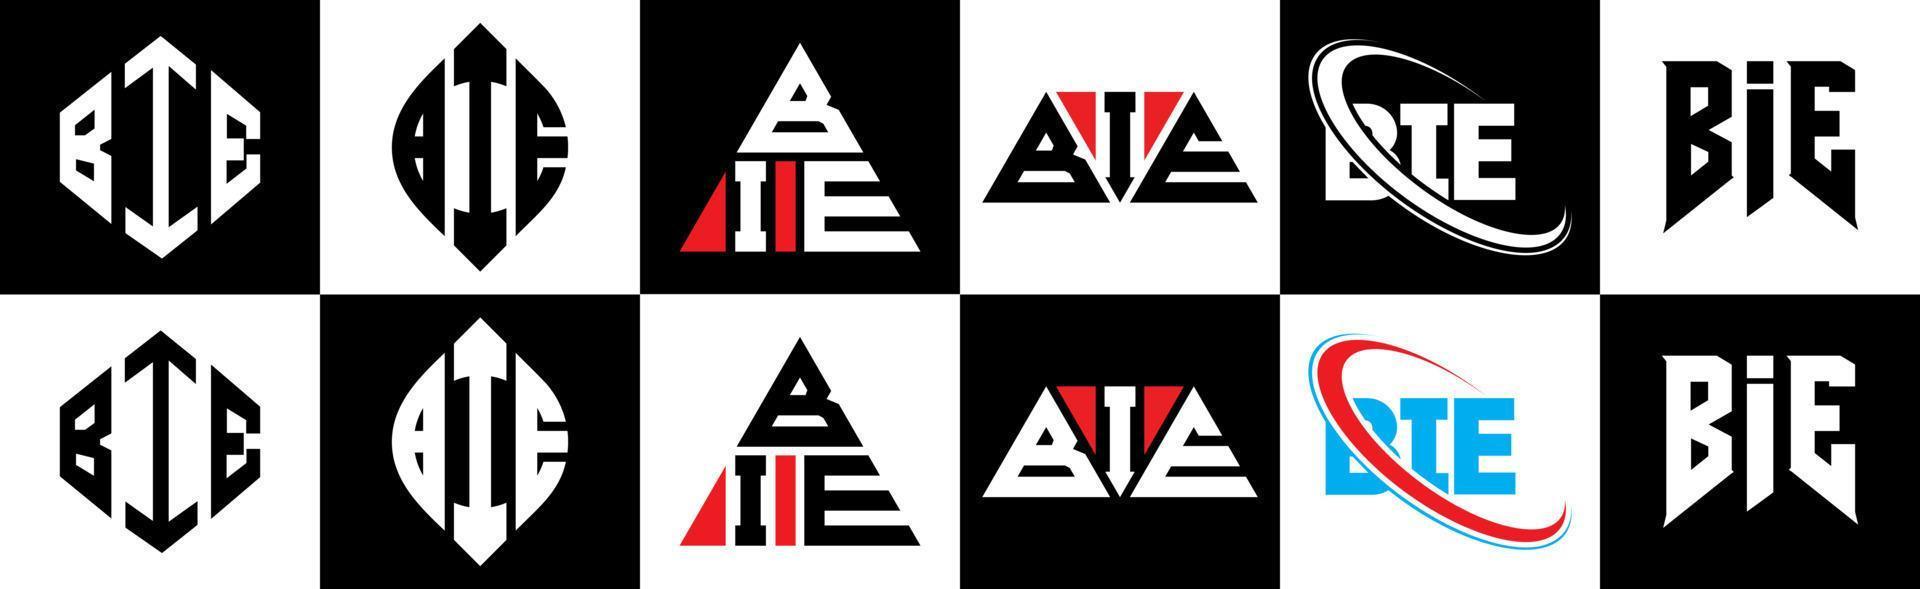 création de logo de lettre bie en six styles. bie polygone, cercle, triangle, hexagone, style plat et simple avec logo de lettre de variation de couleur noir et blanc dans un plan de travail. bie logo minimaliste et classique vecteur